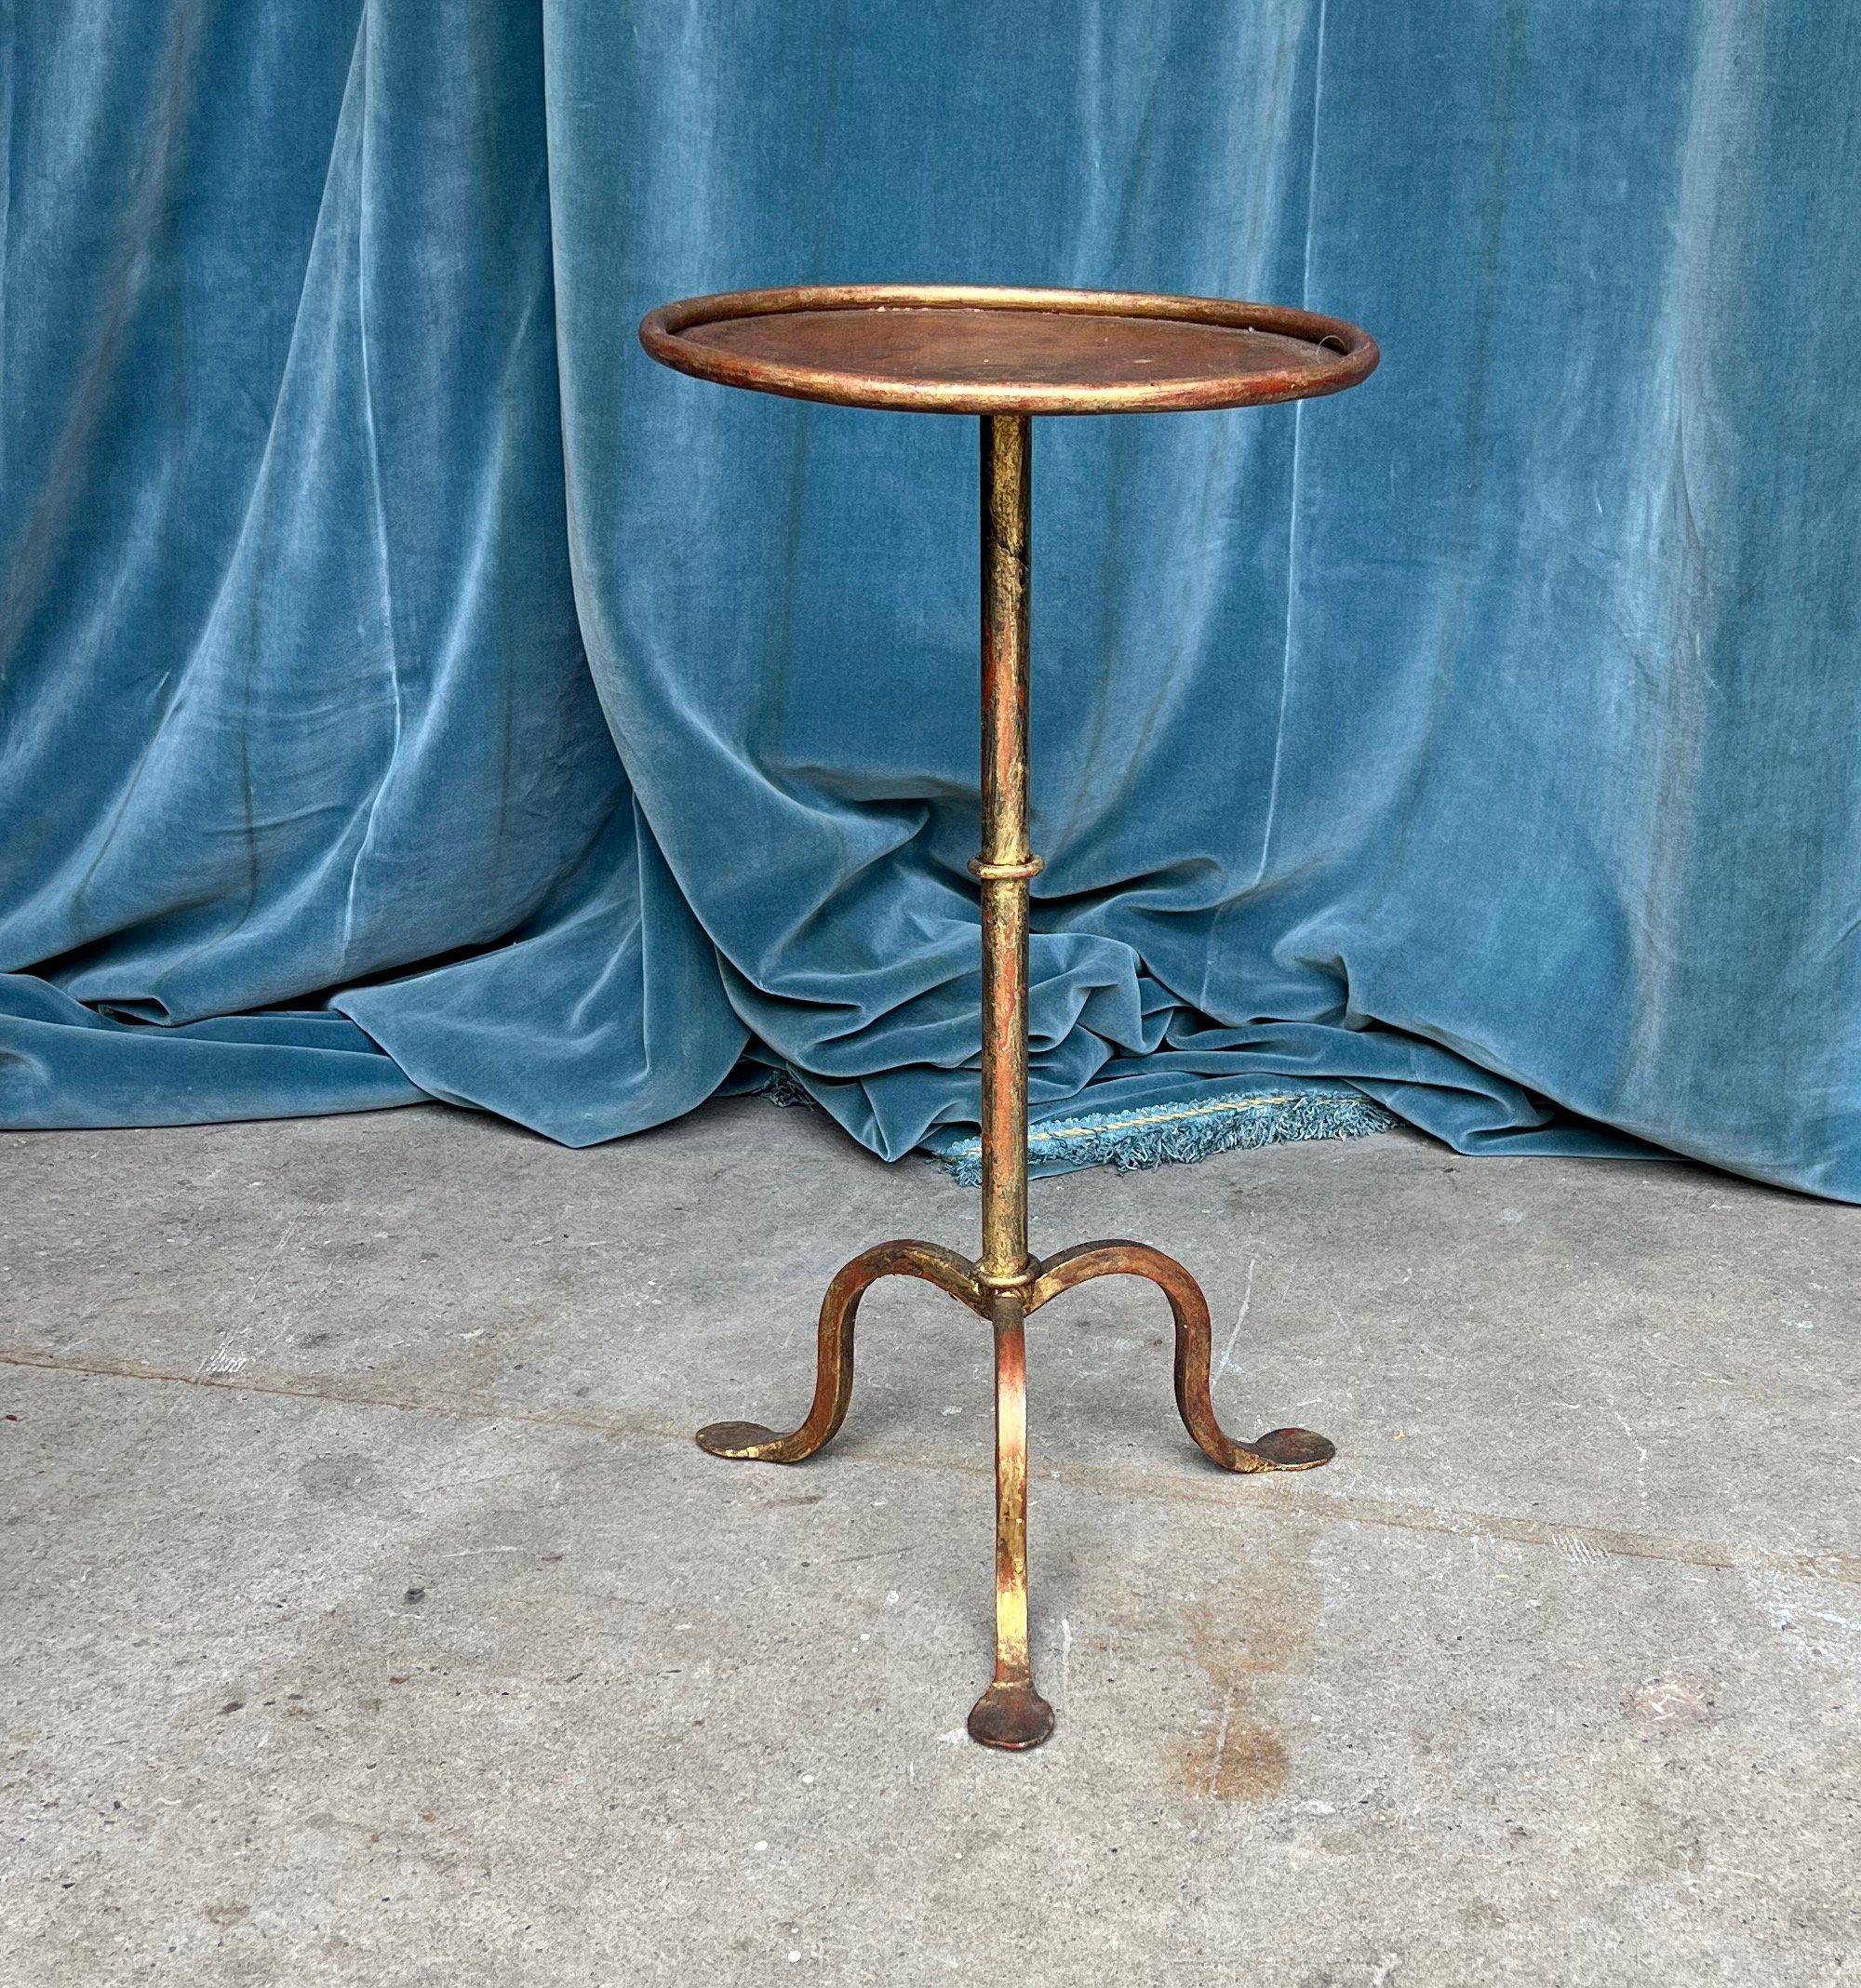 Cette belle table à martini en fer doré a été récemment créée par des artisans accomplis utilisant des méthodes traditionnelles de travail du fer et mettant l'accent sur une qualité supérieure. Grâce à une attention méticuleuse aux détails, il